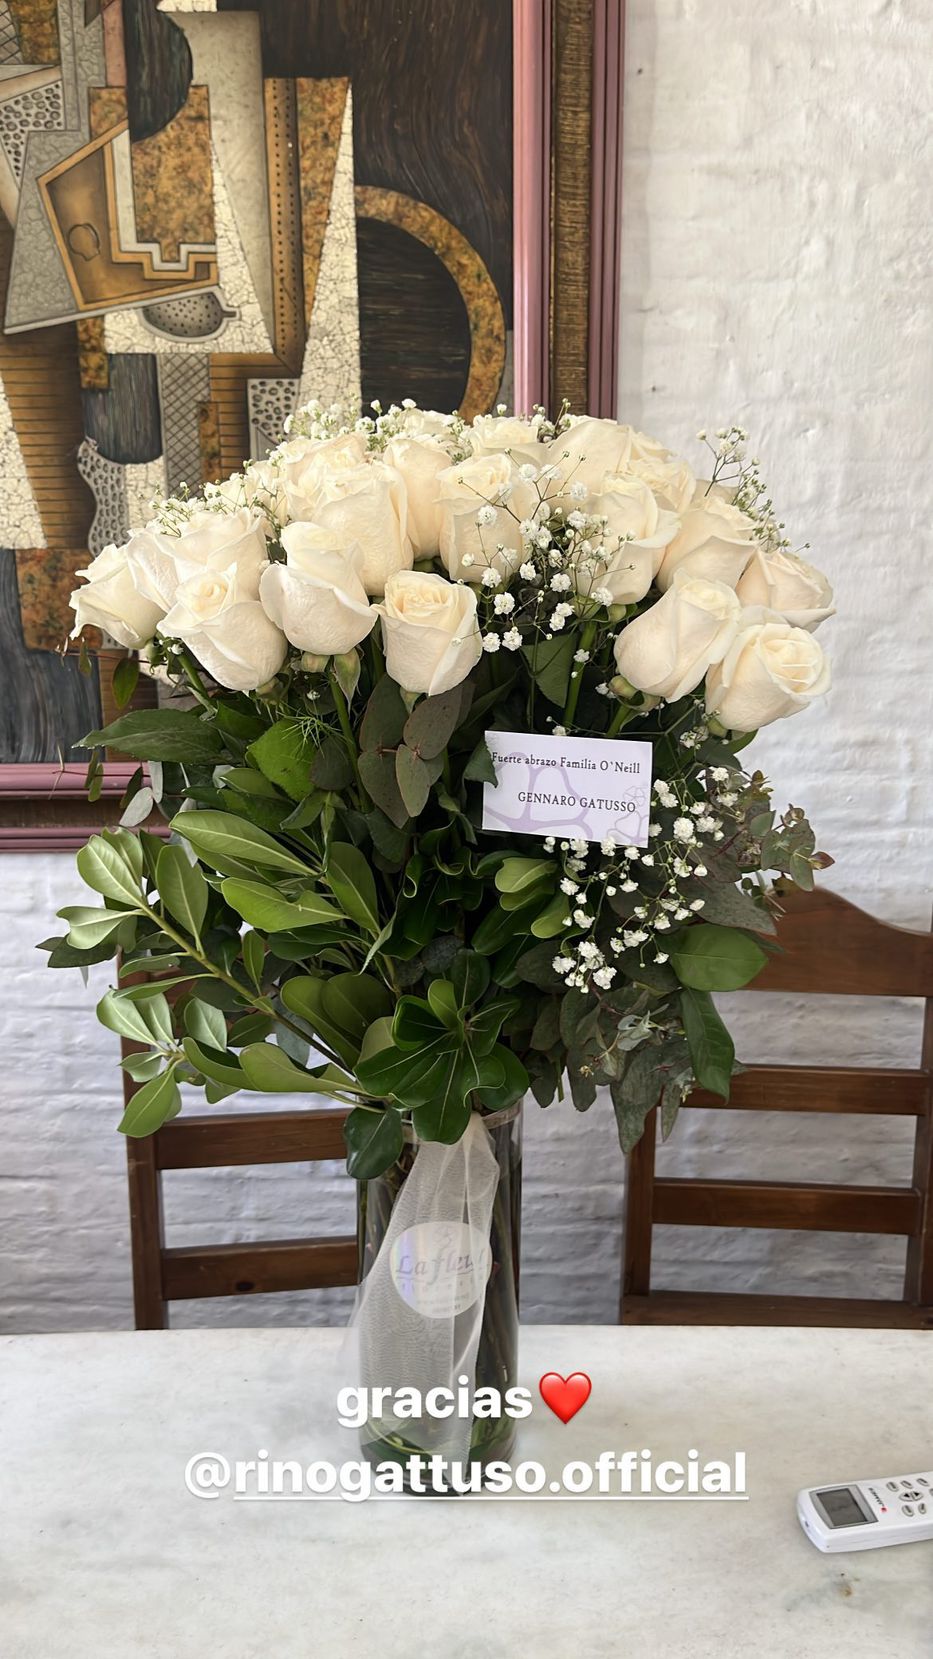 Ramo de flores enviado por Gennaro Gattuso a la familia de O’Neill. Foto: Instagram @fav10oneill